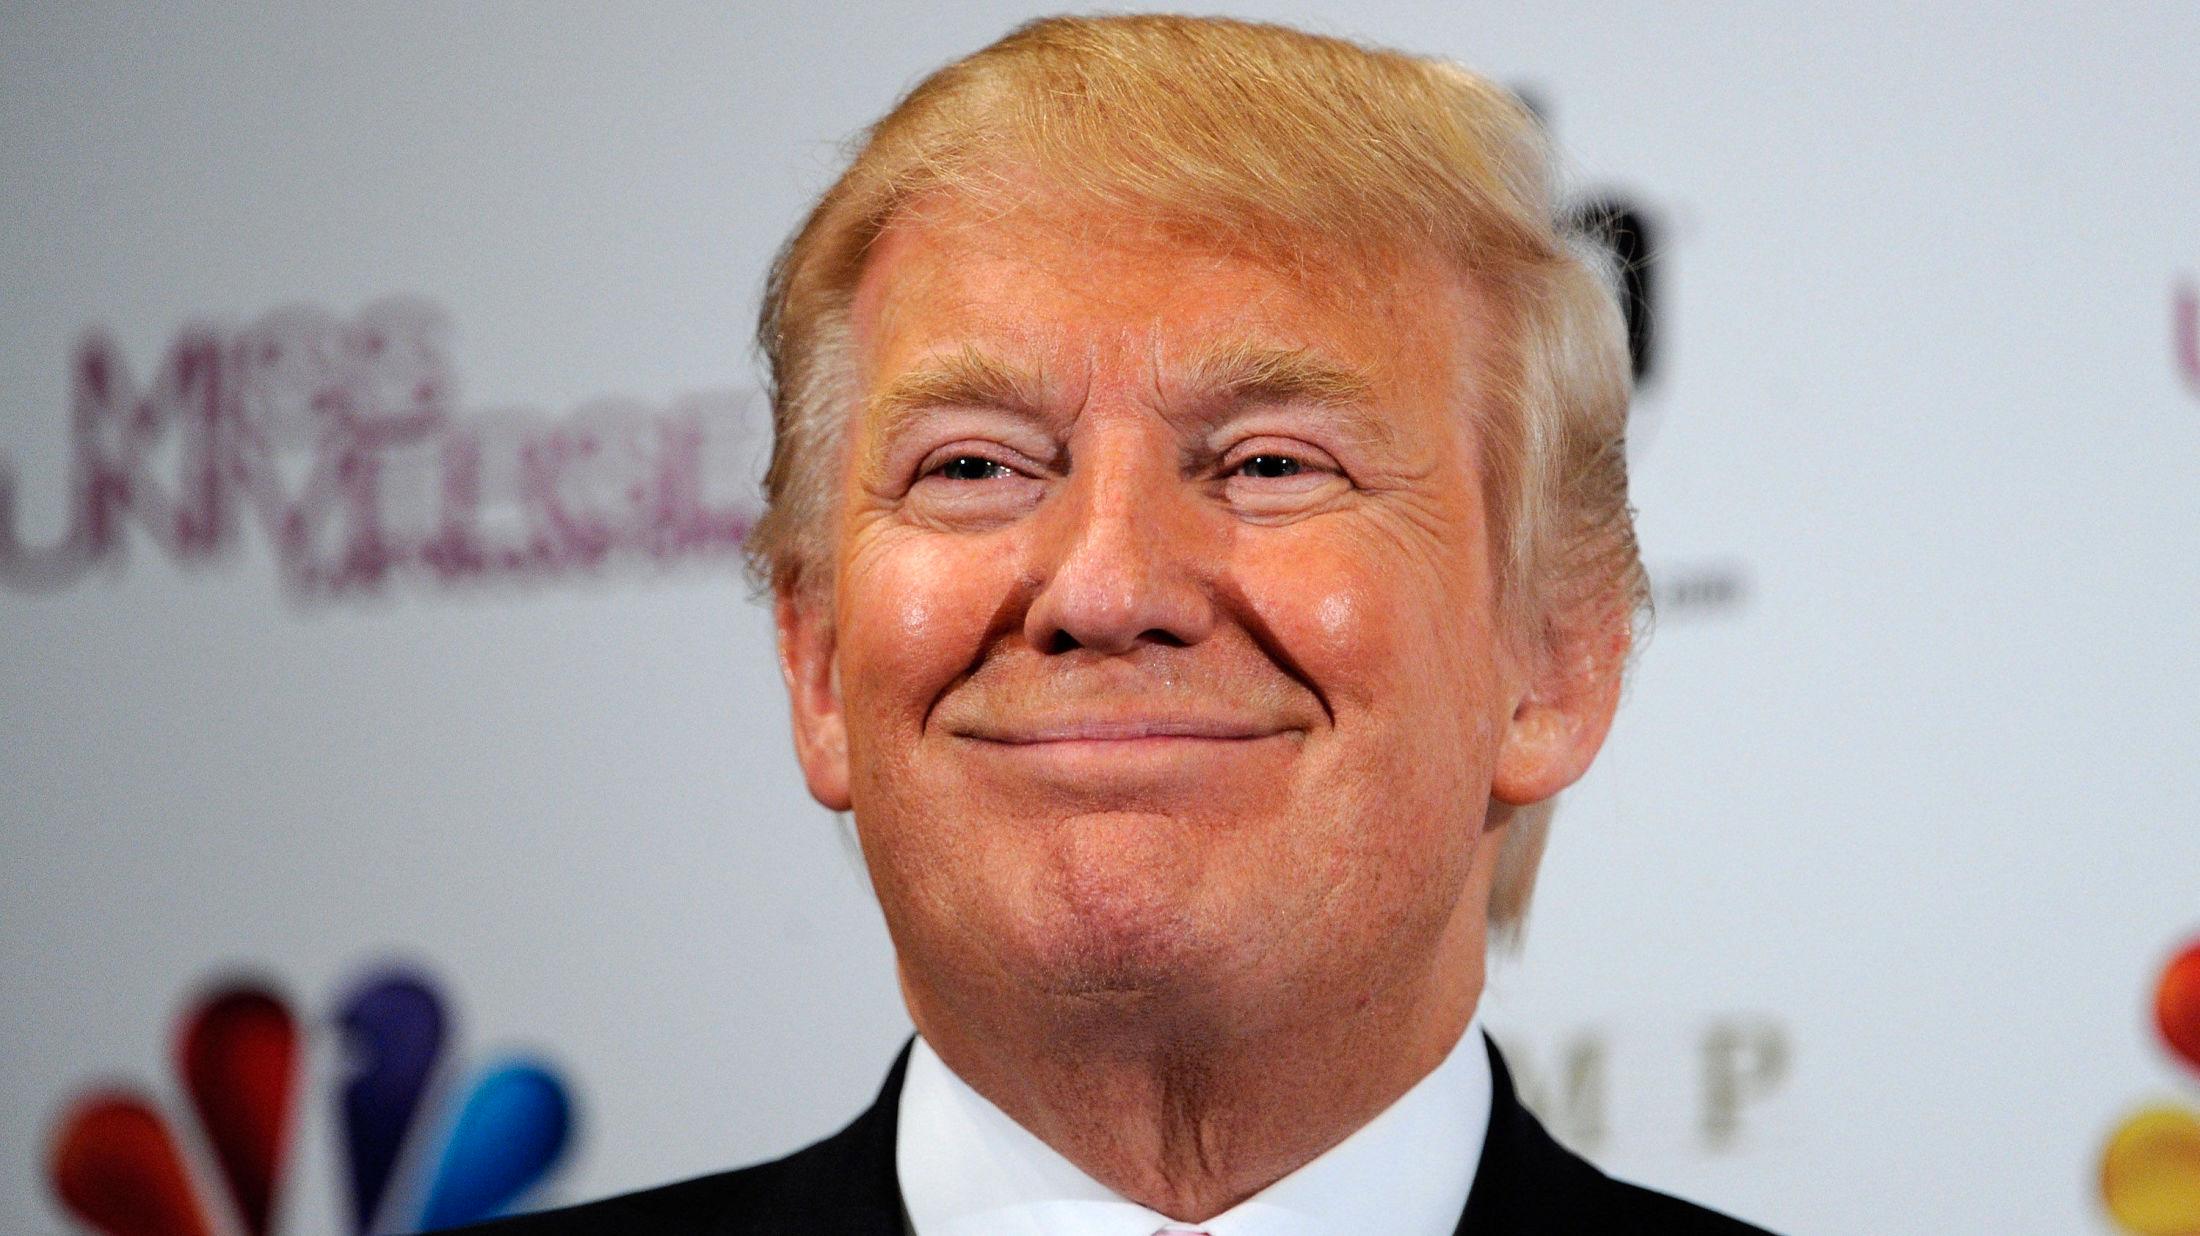 FORFENGELIG: Trump er tydelig opptatt av sitt eget utseende, men har måtte tåle mye sjikane for både sminke og hår. Foto: Getty Images